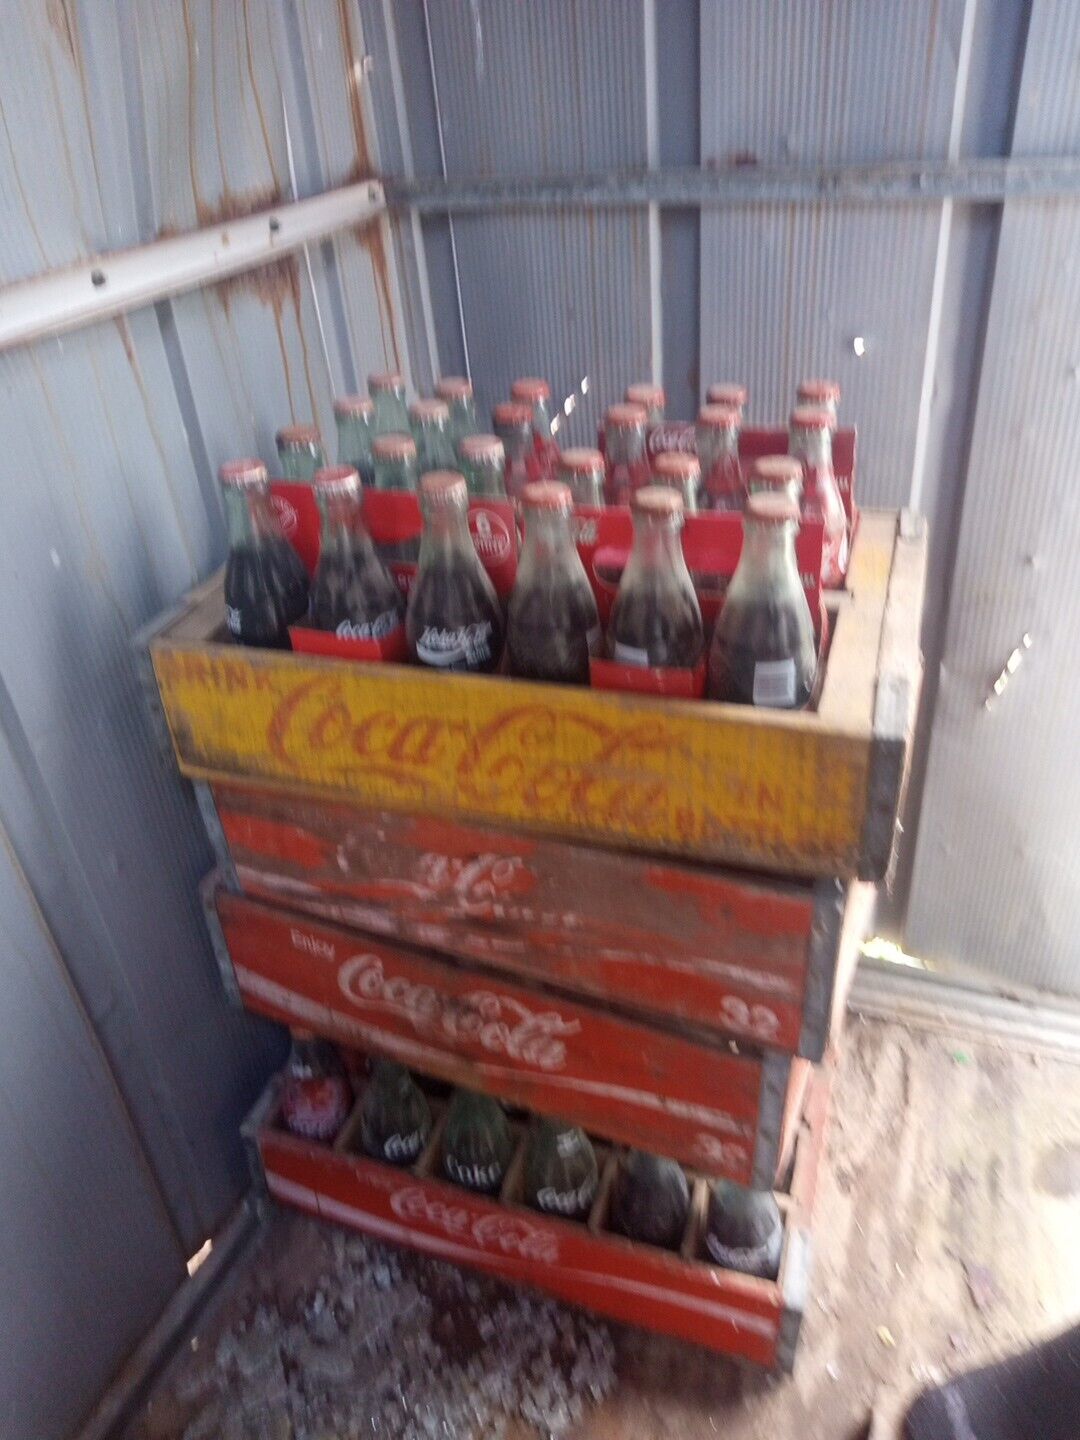 coke a cola collectibles